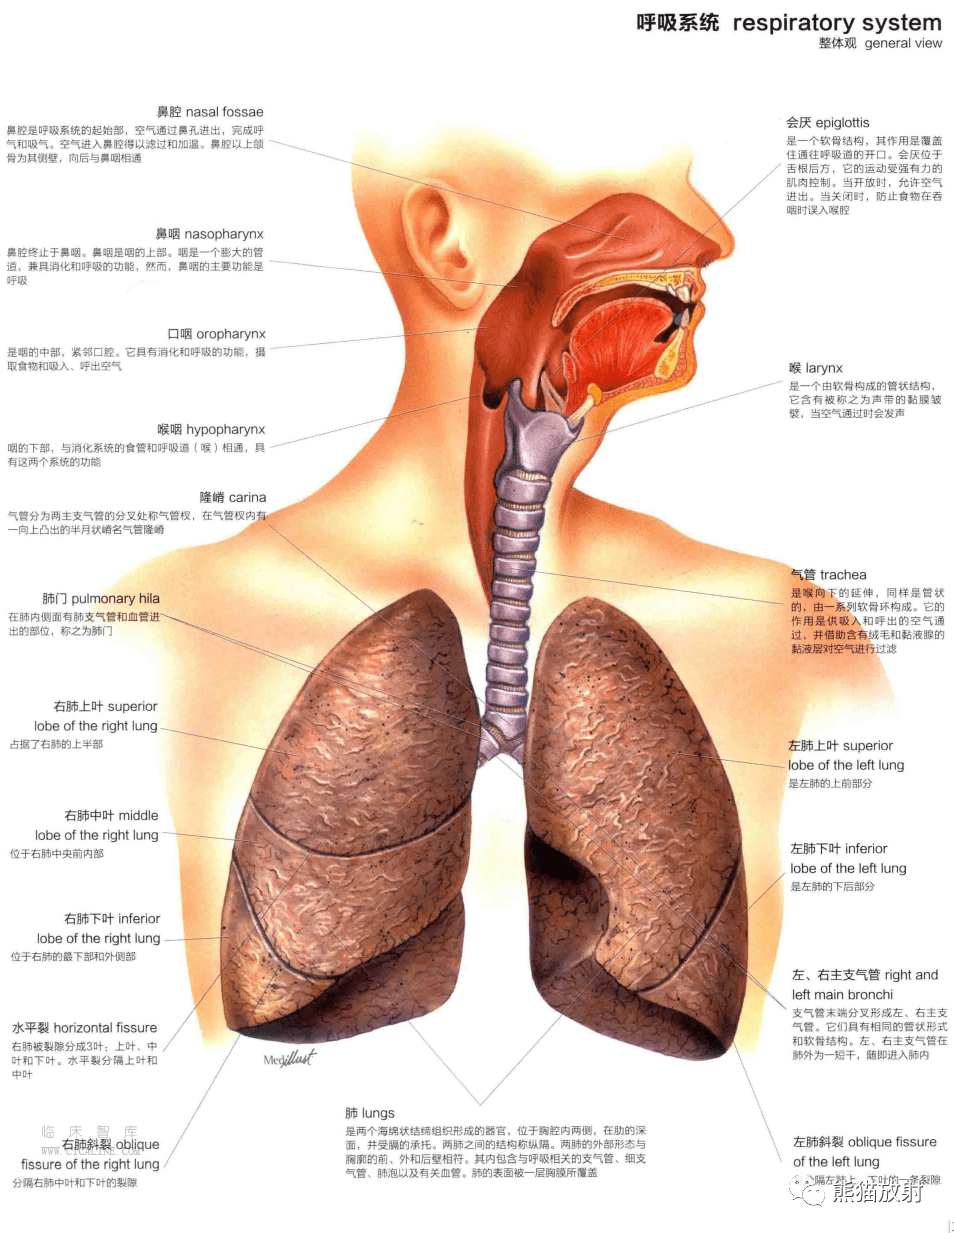 人体图谱丨呼吸系统(上呼吸道,肺,支气管树,肺泡)